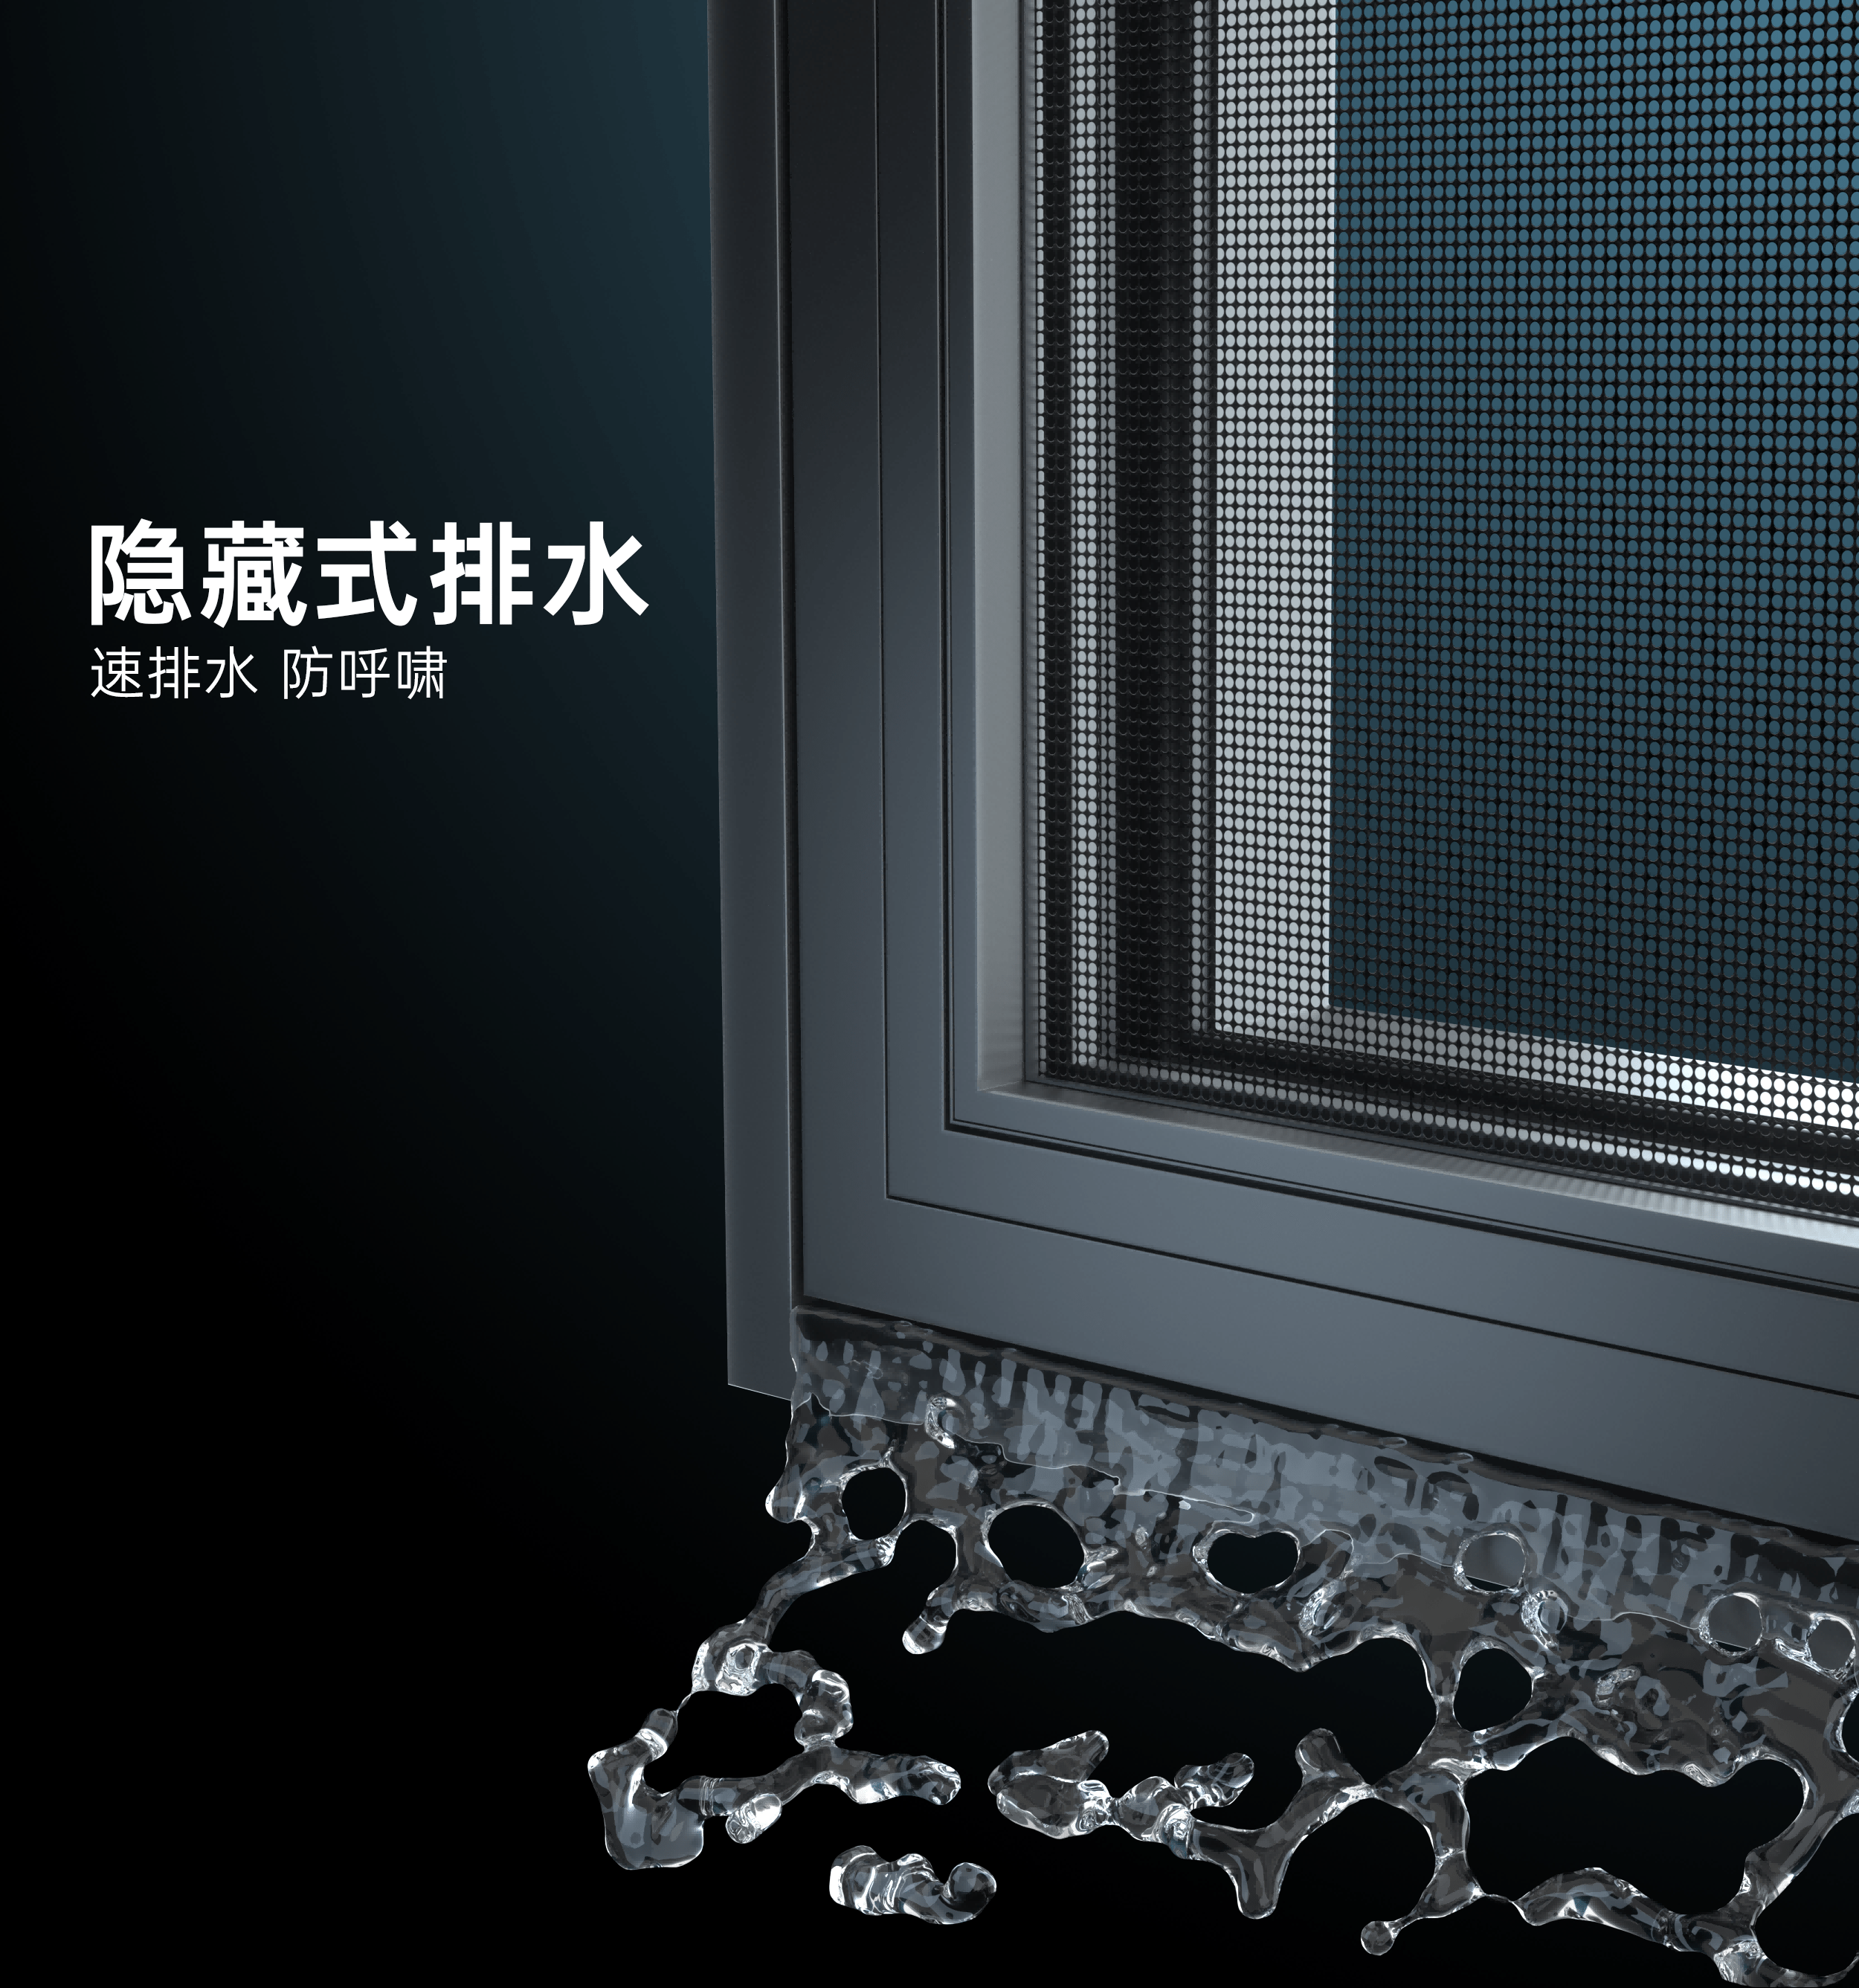 40℃被热死的夏天，系统门窗帮您解锁夏日清凉~